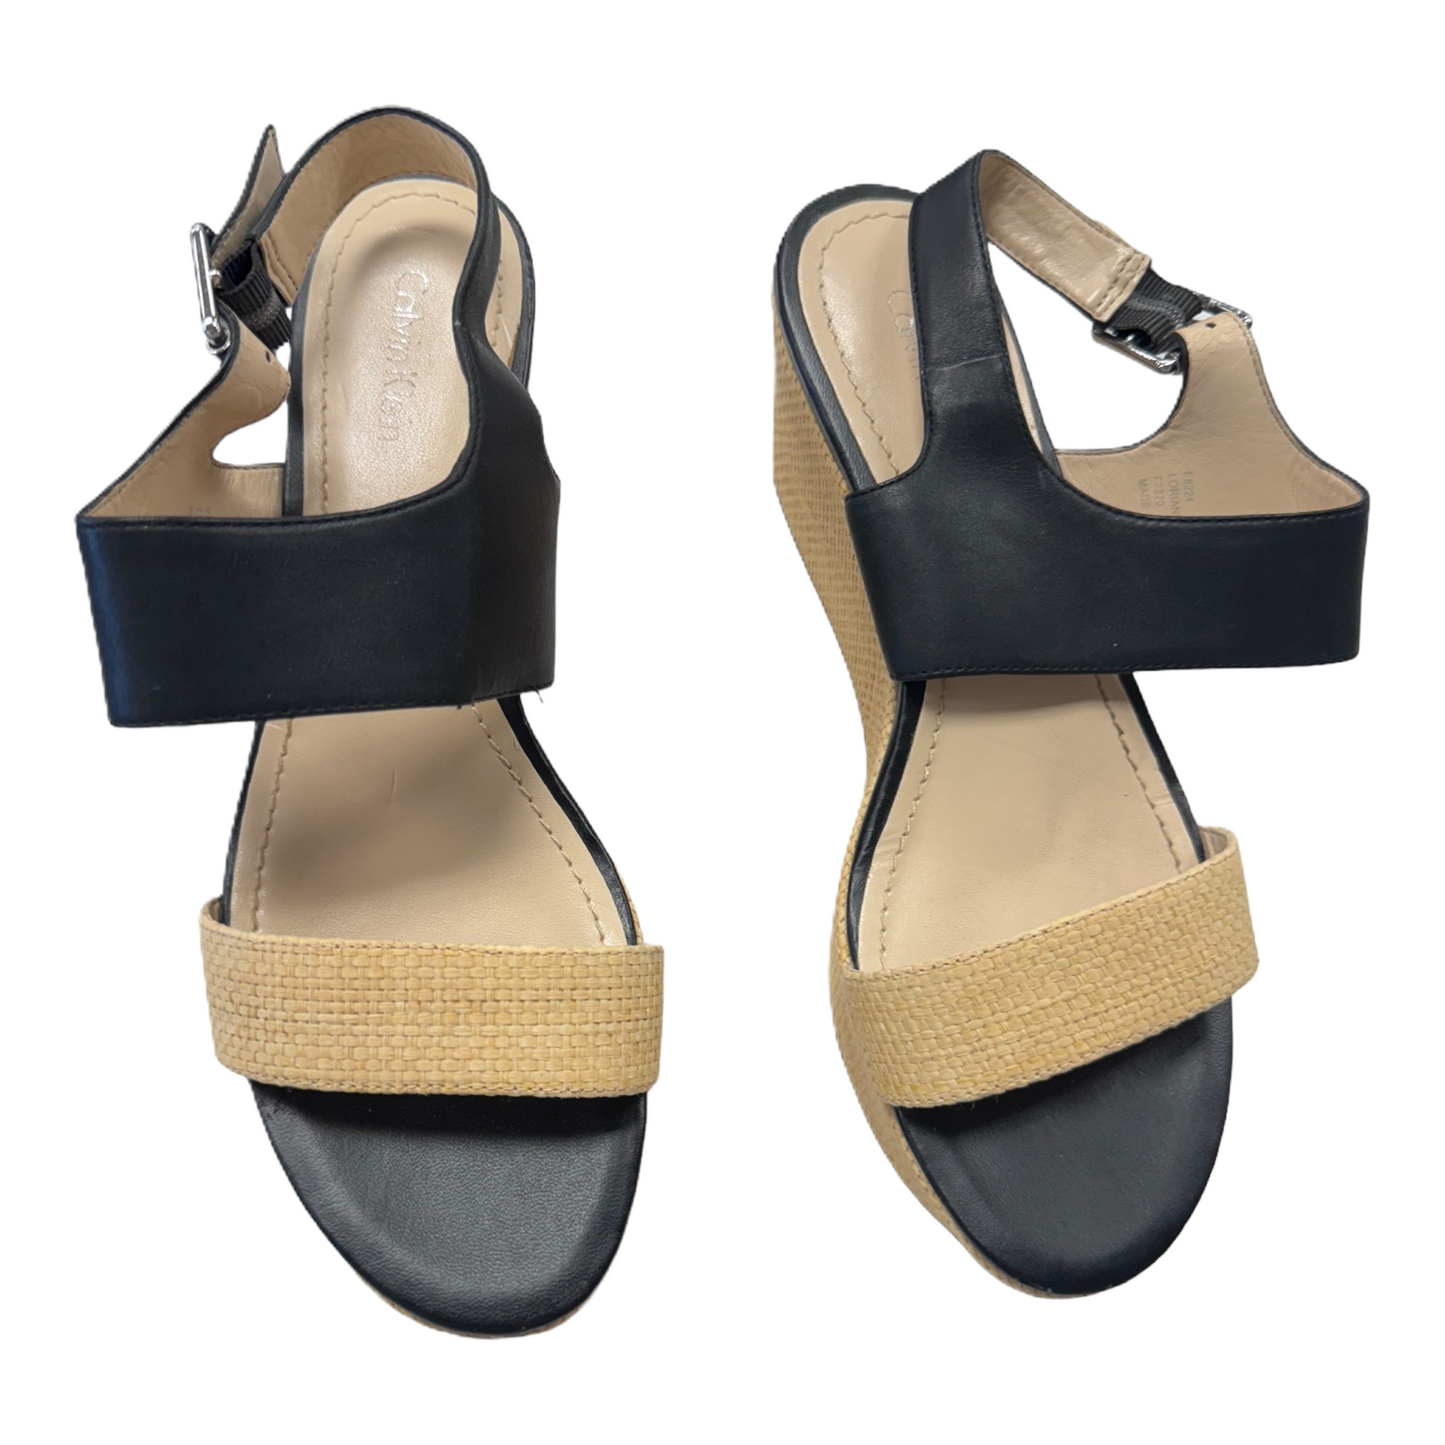 Sandals Heels Platform By Calvin Klein  Size: 8